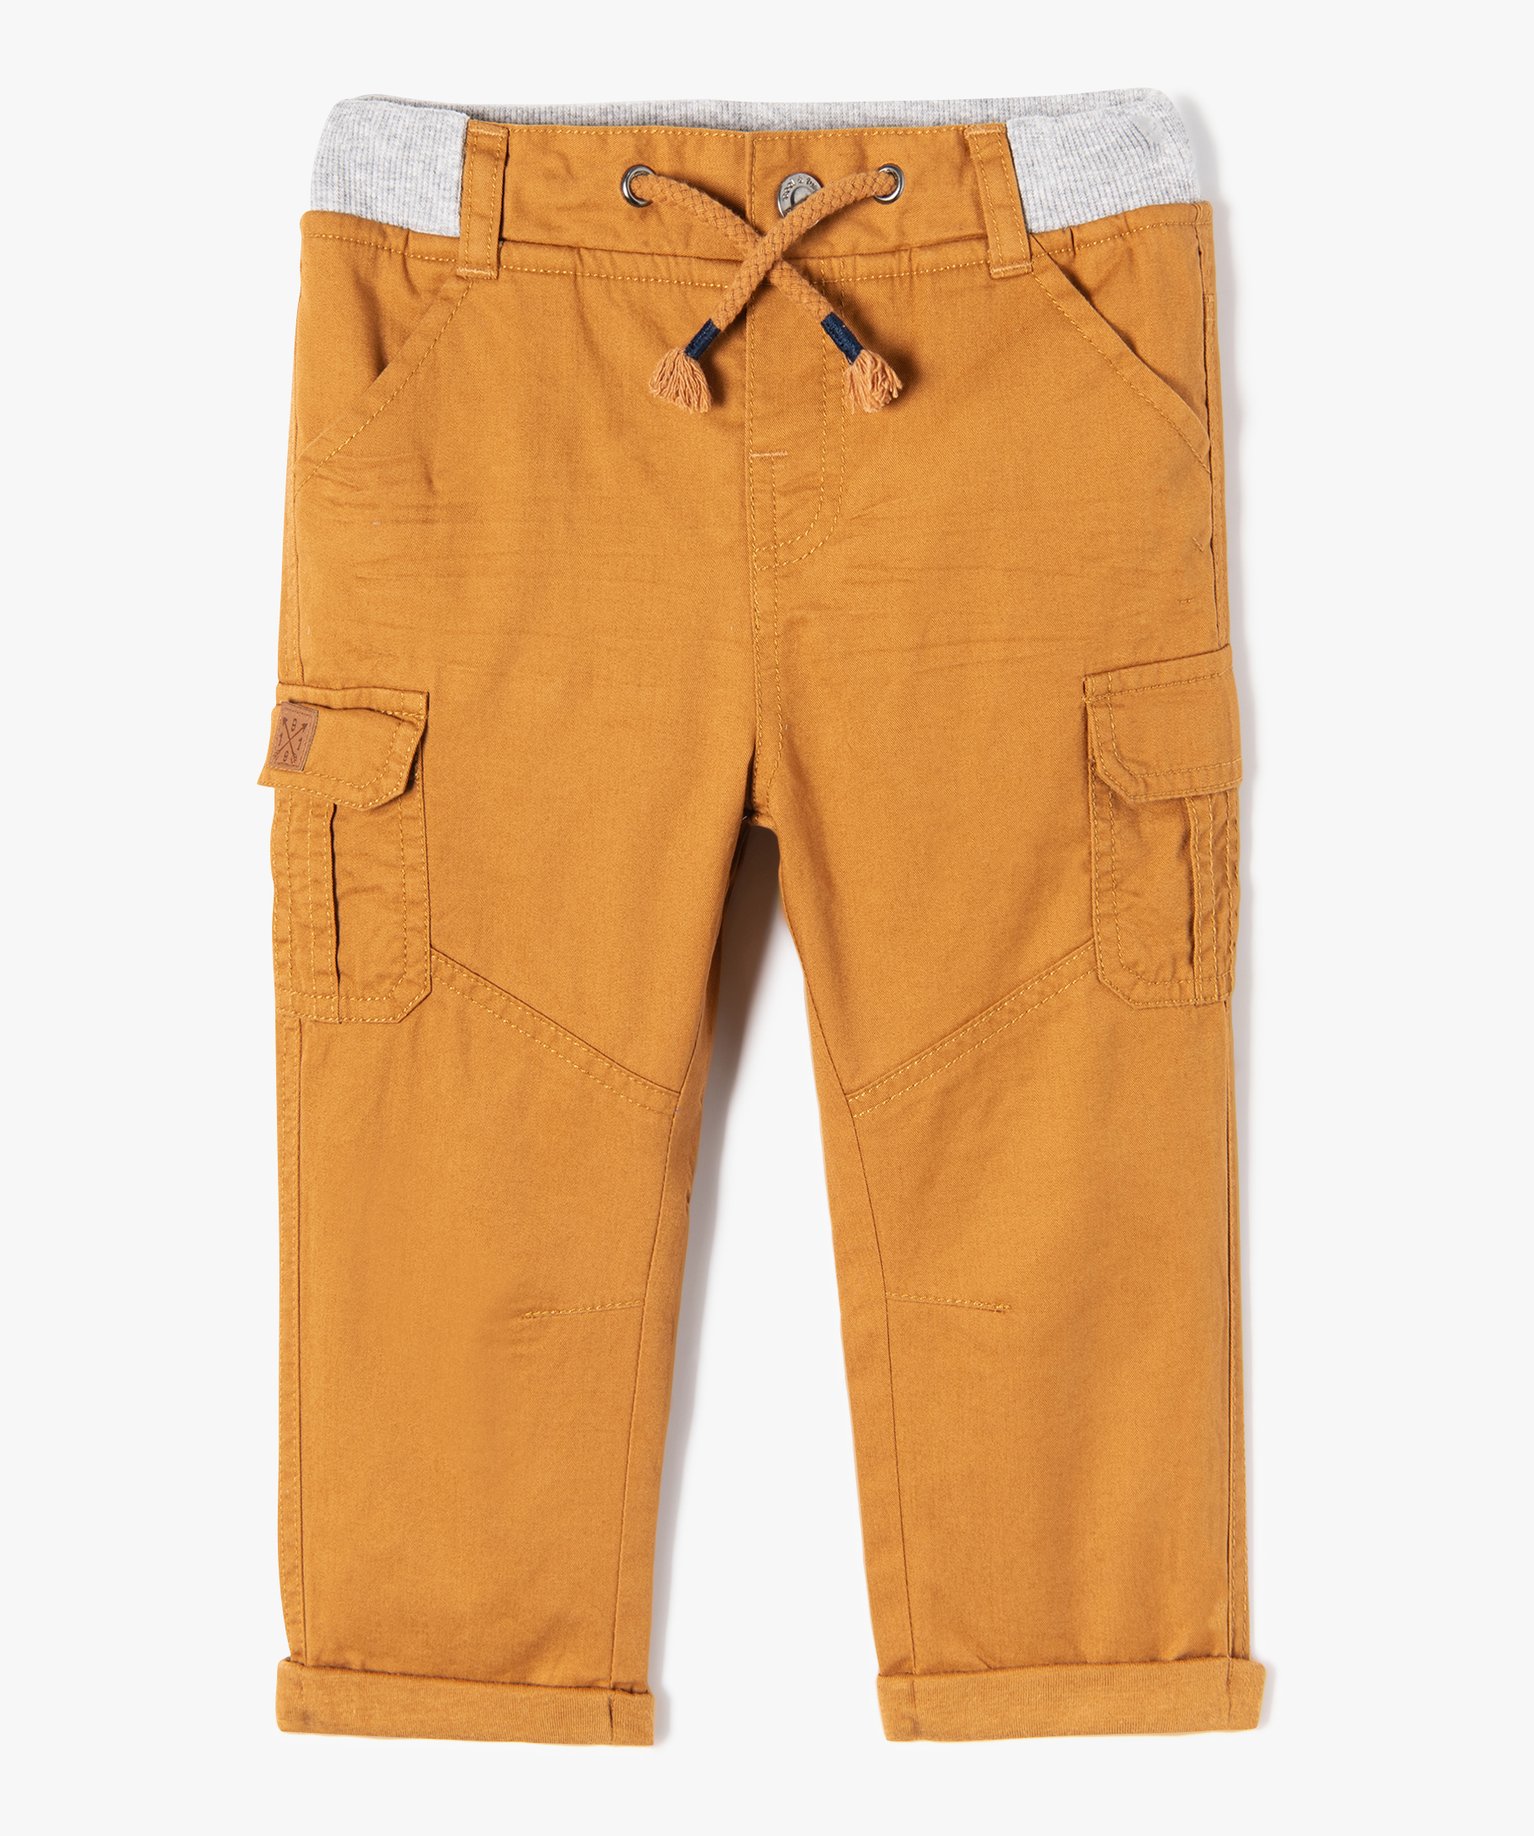 Pantalon coupe cargo doublé avec taille élastique bébé garçon - 3M - marron - GEMO